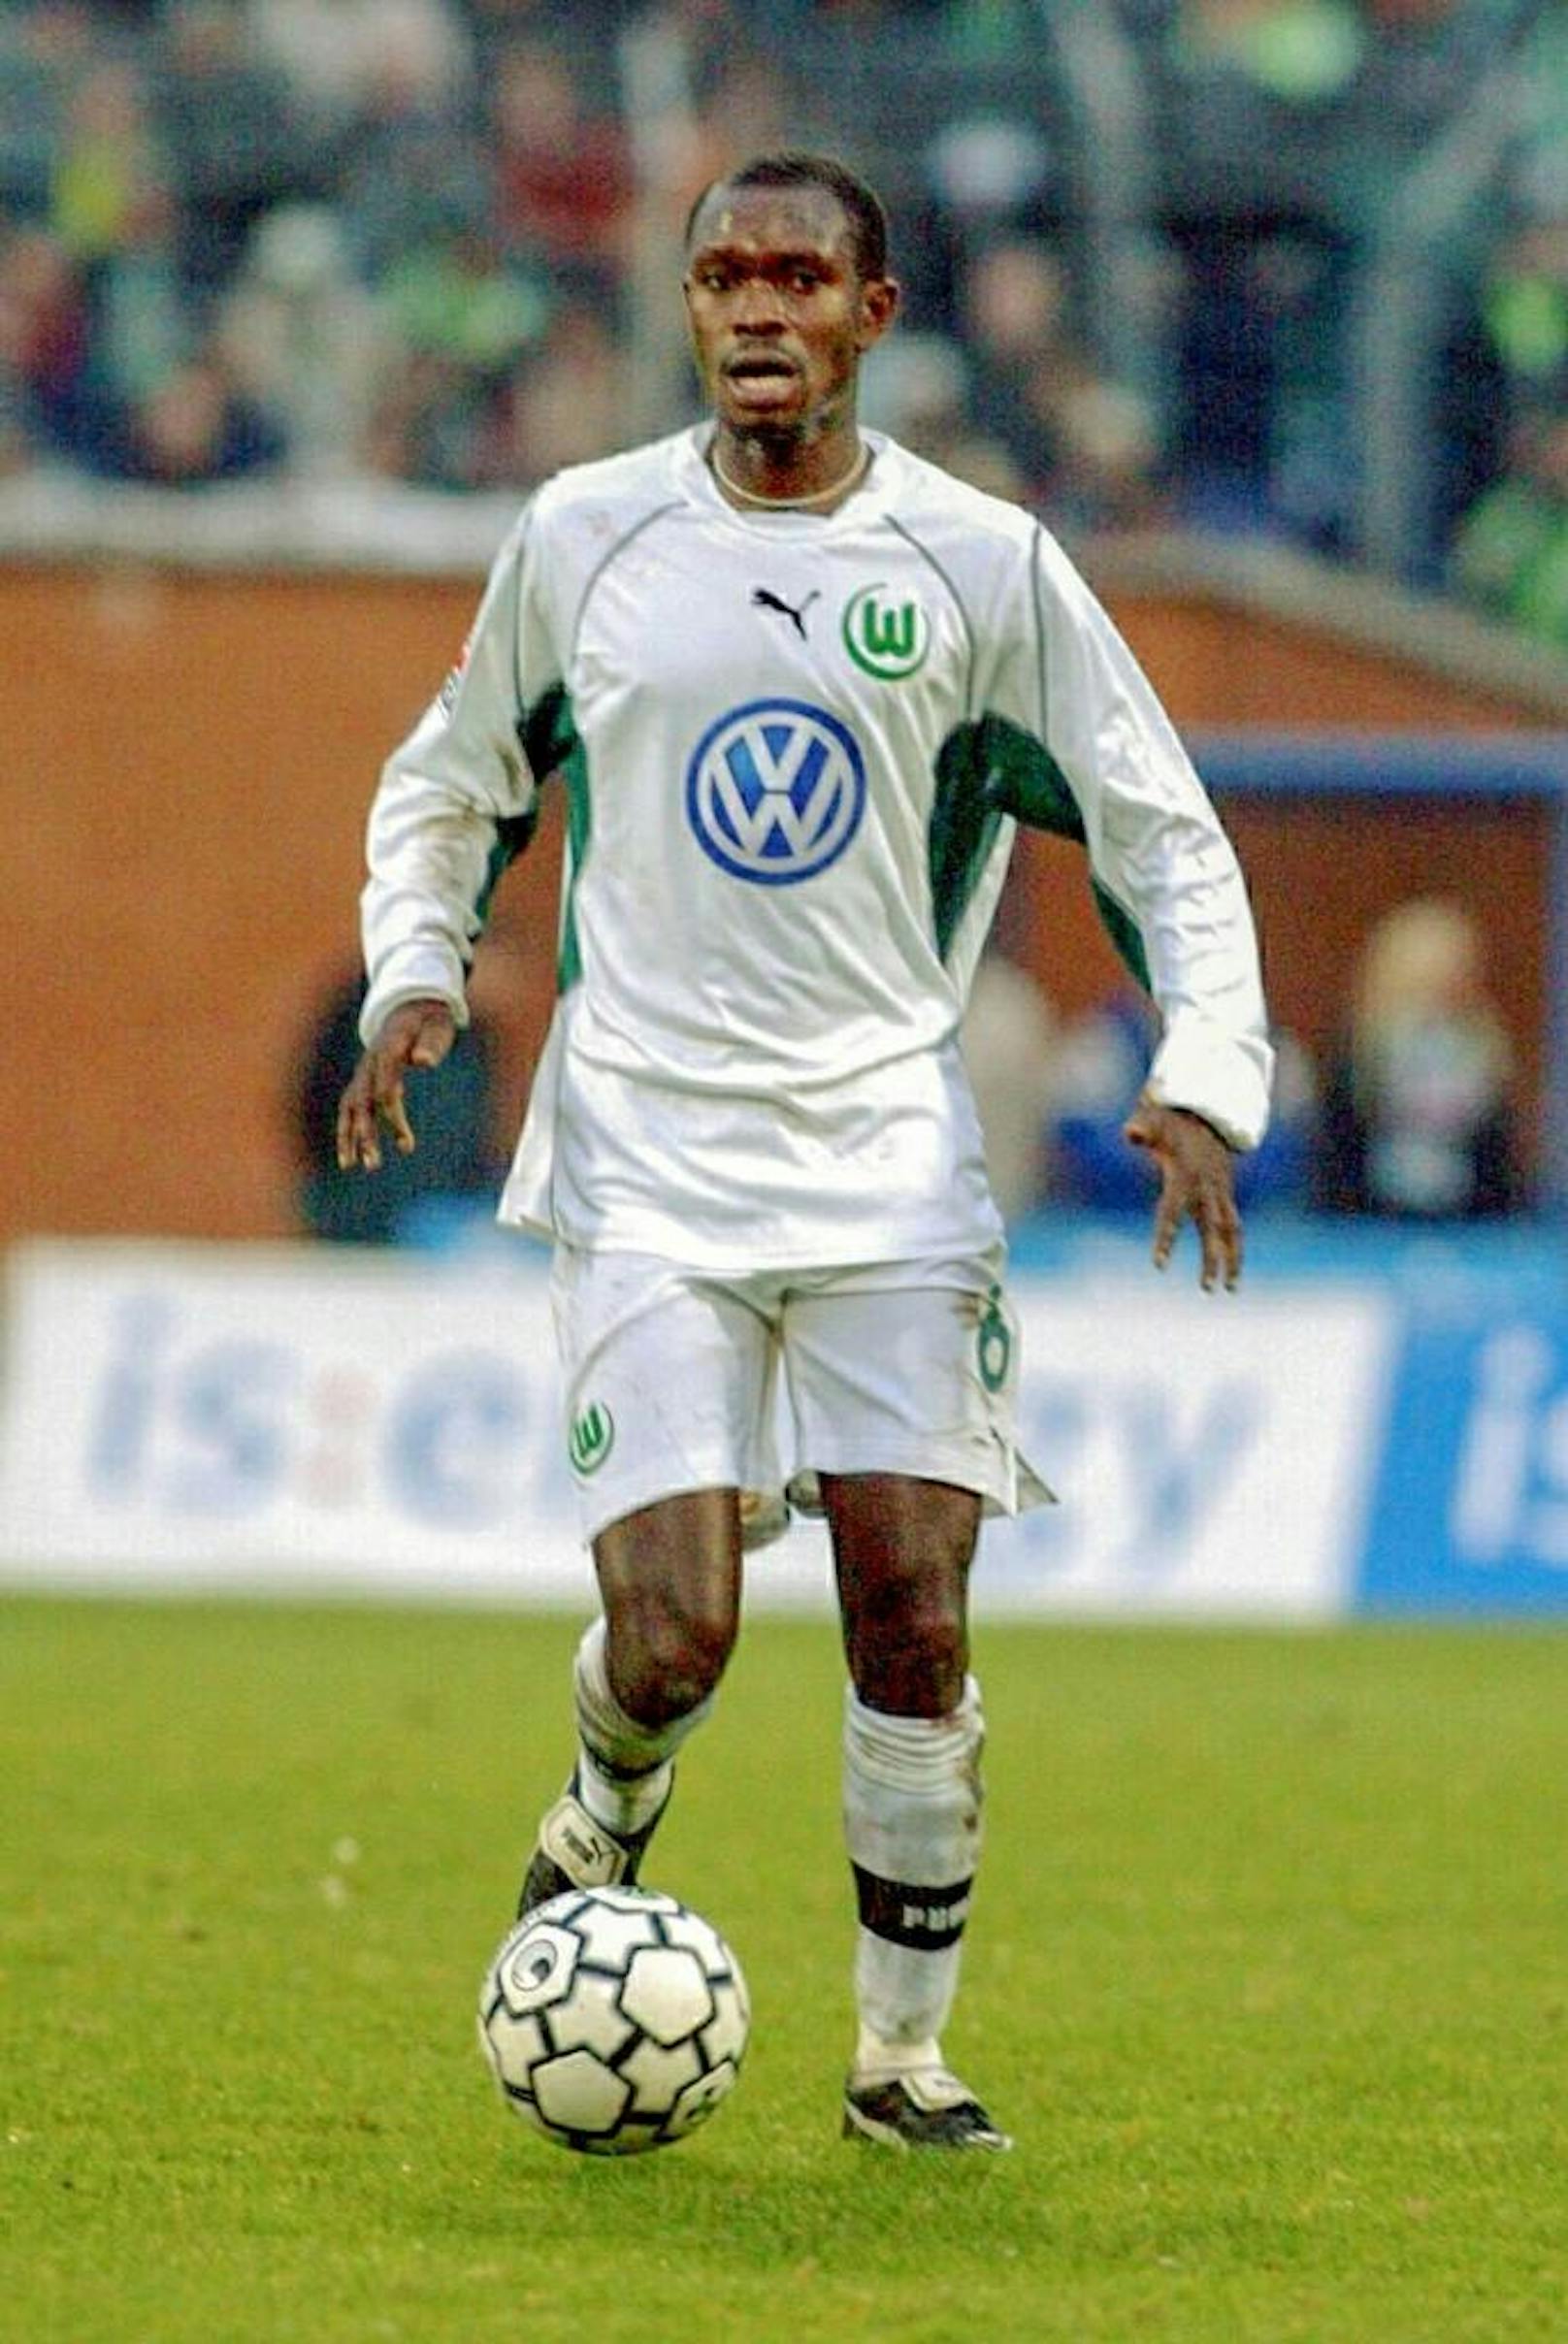 Wolfsburg-Spieler Charles Akonnor rammte sich 2001 eine Autoantenne in die Nase. Um die Blutung zu stoppen, nahm er ein Medikament, das allerdings auf der Dopingliste stand. Er wurde für drei Spiele gesperrt. 